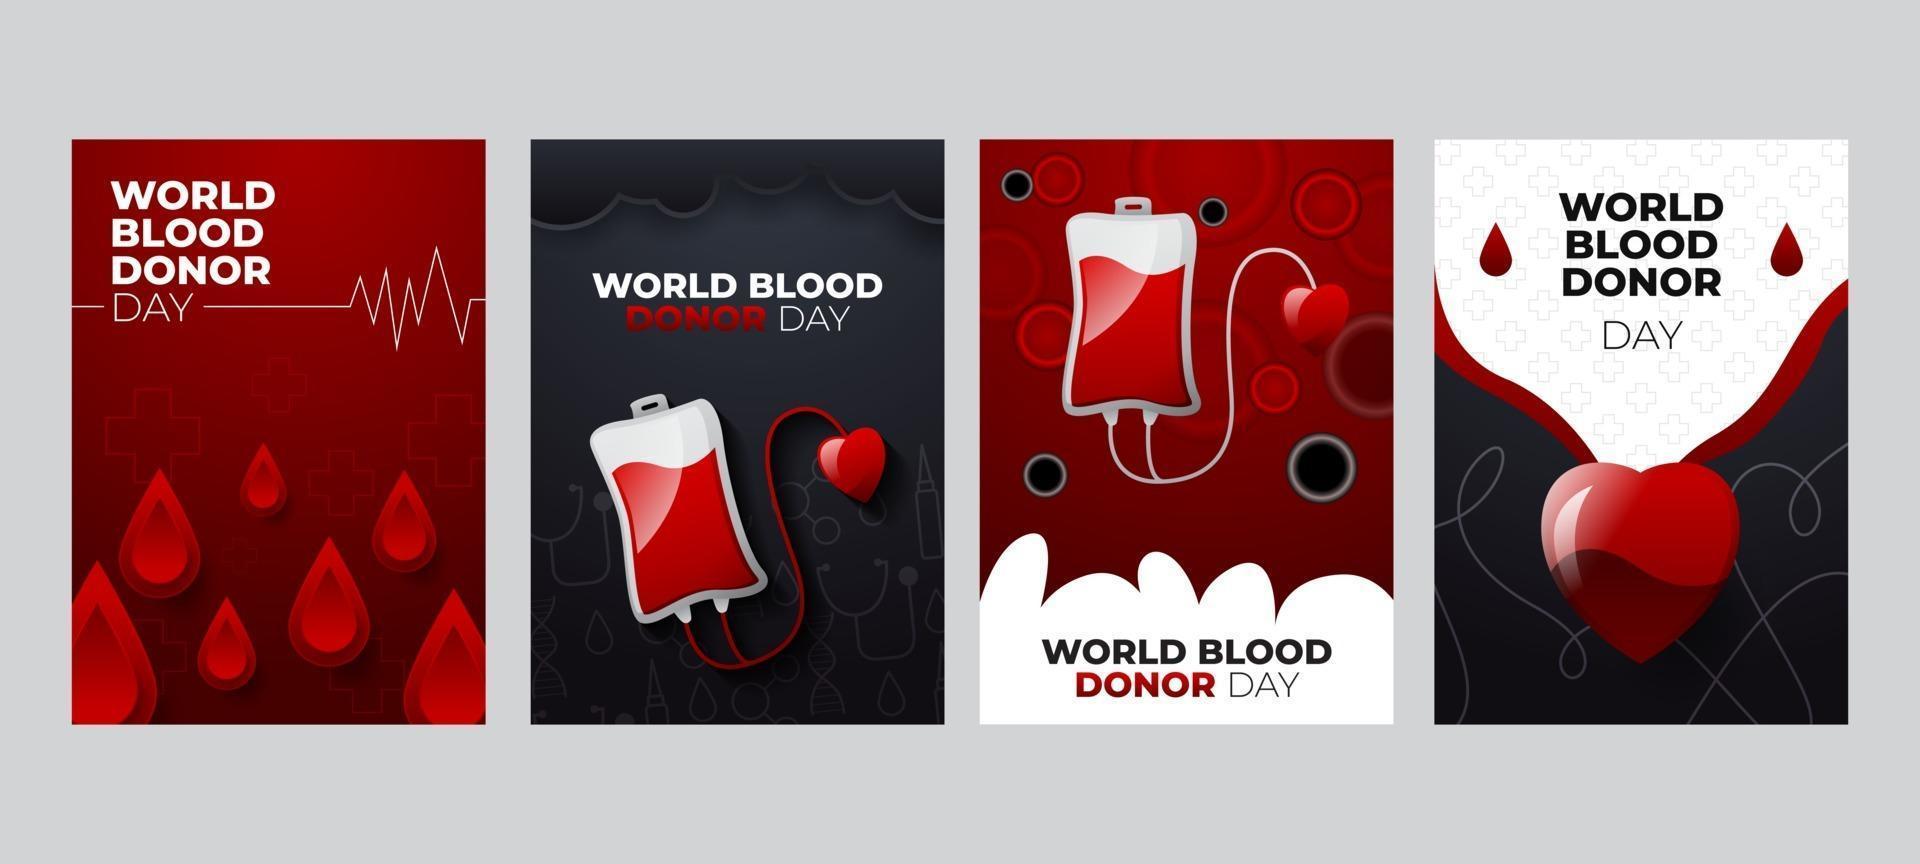 gratulationskort världens blodgivardag vektor